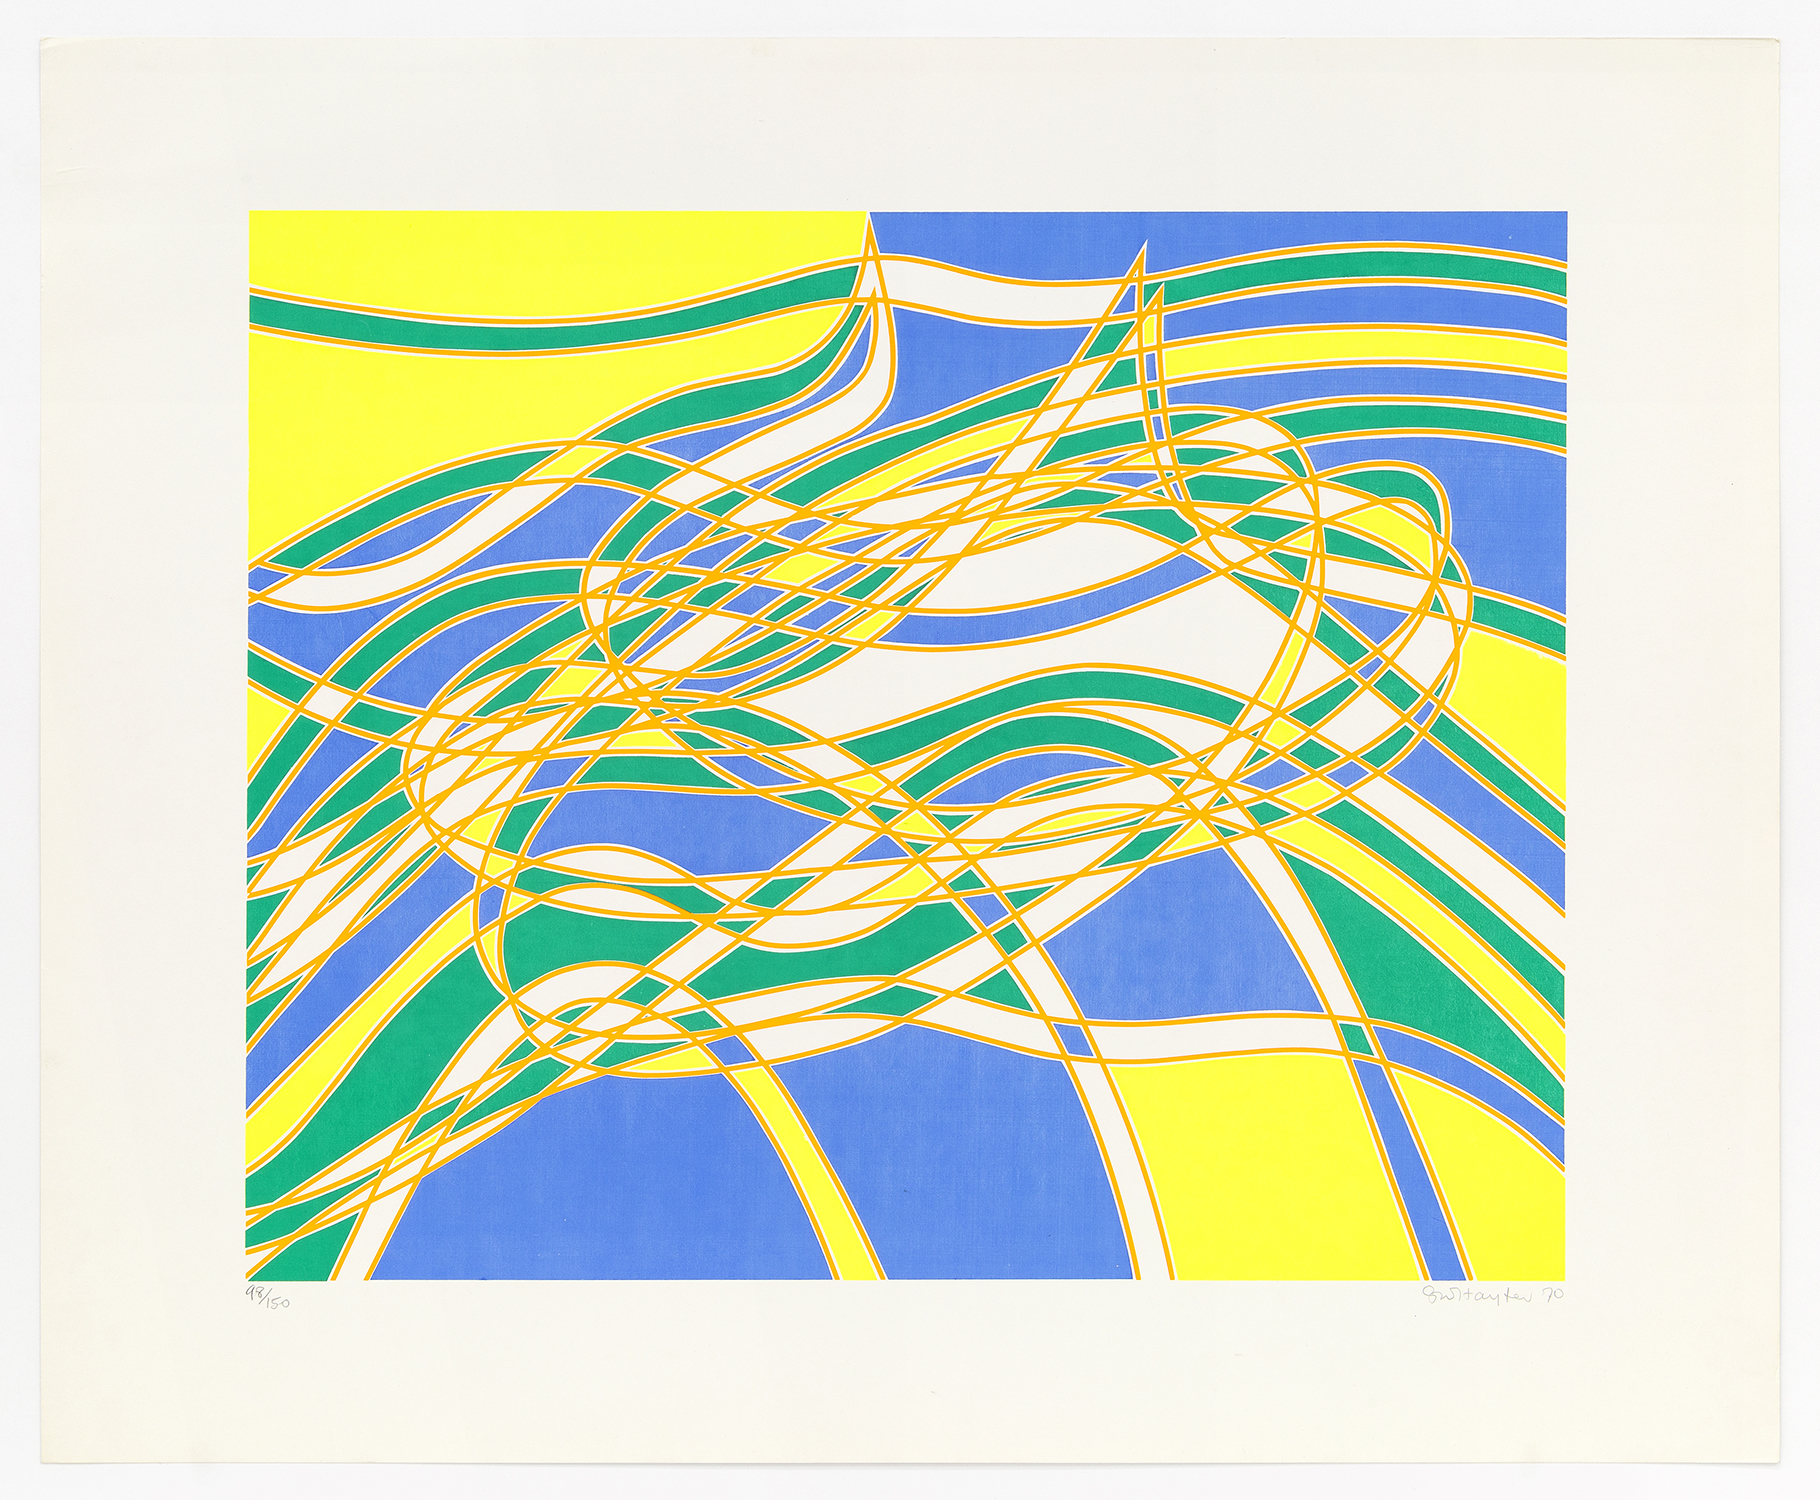 Aquaria Series A, 1970, Silkscreen, 23 x 28 inches (58.4 x 71.1 cm), Edition of 150